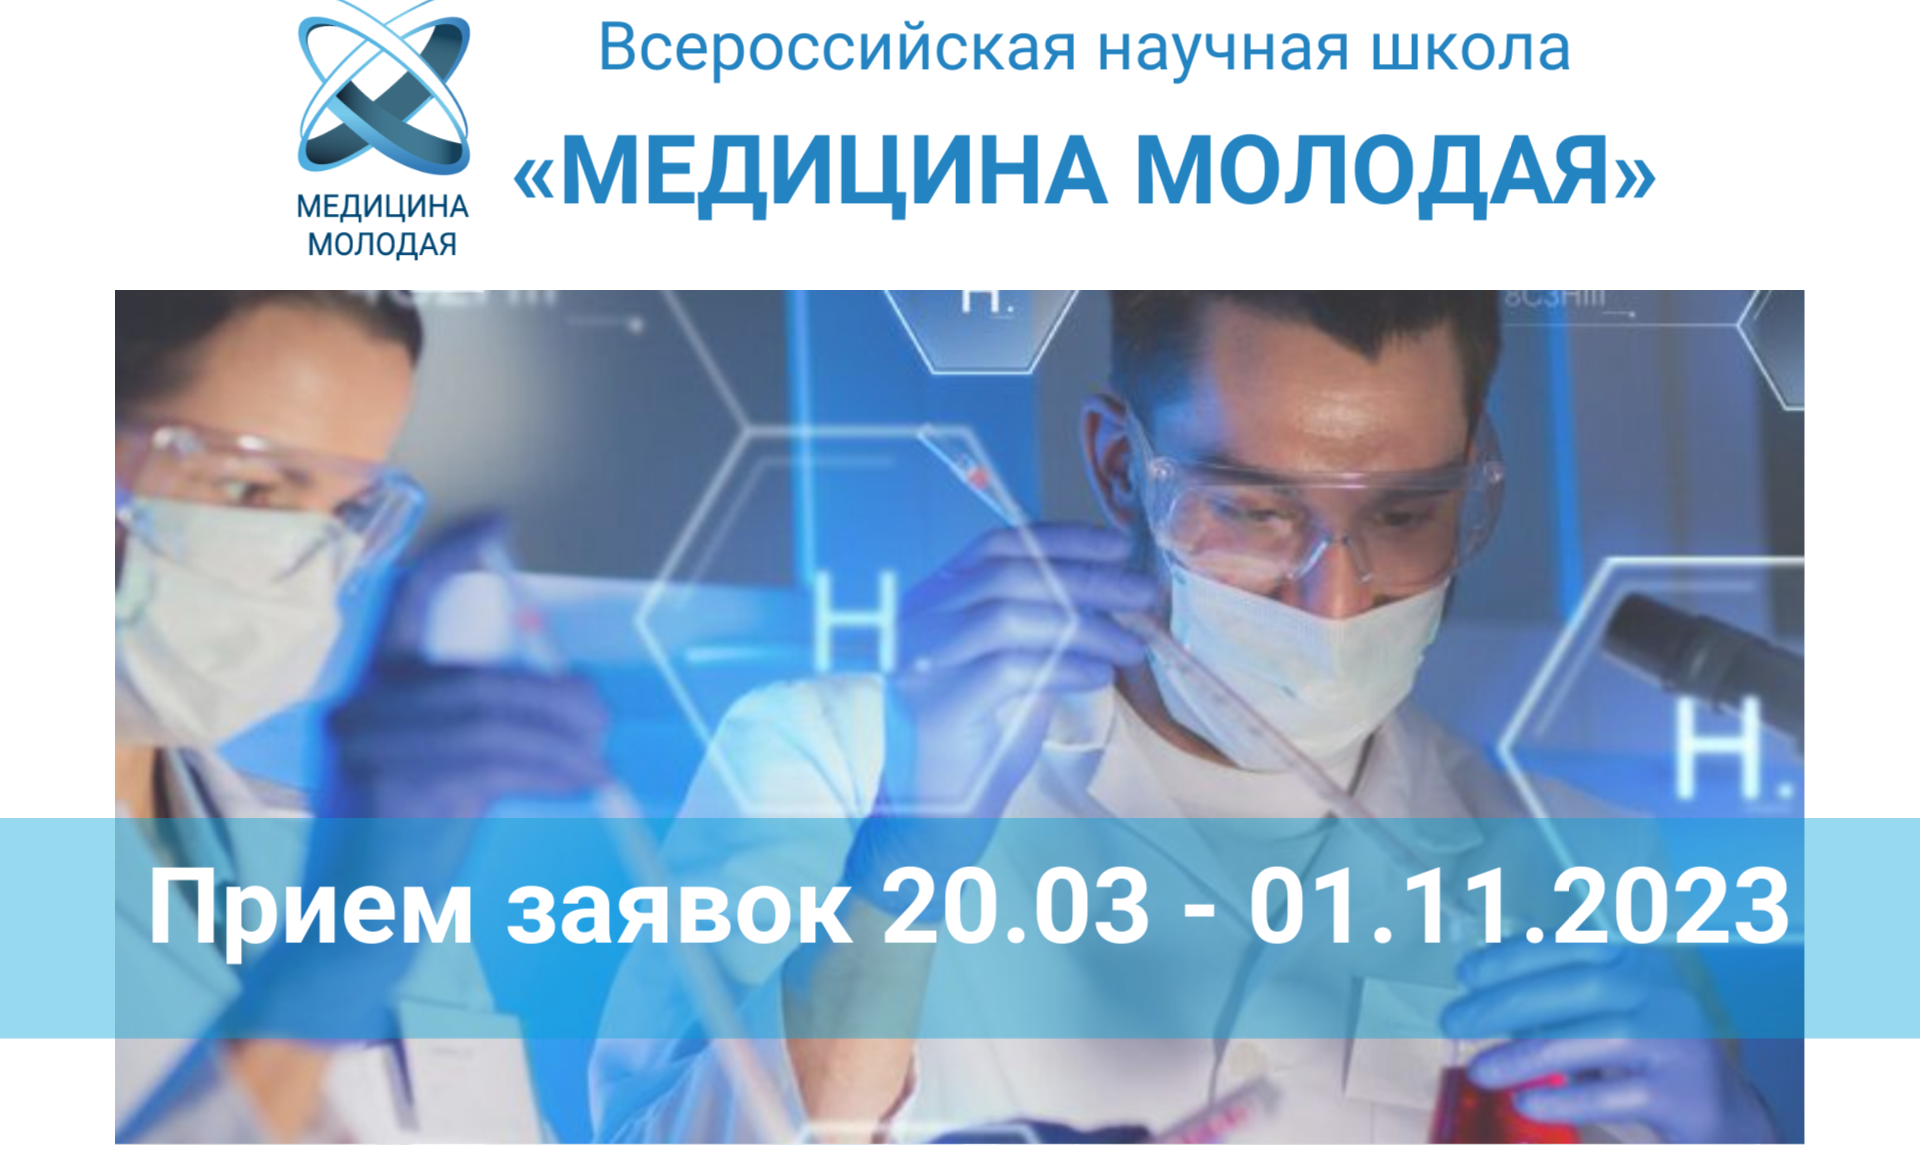 Будущих врачей приглашают на Всероссийский конкурс